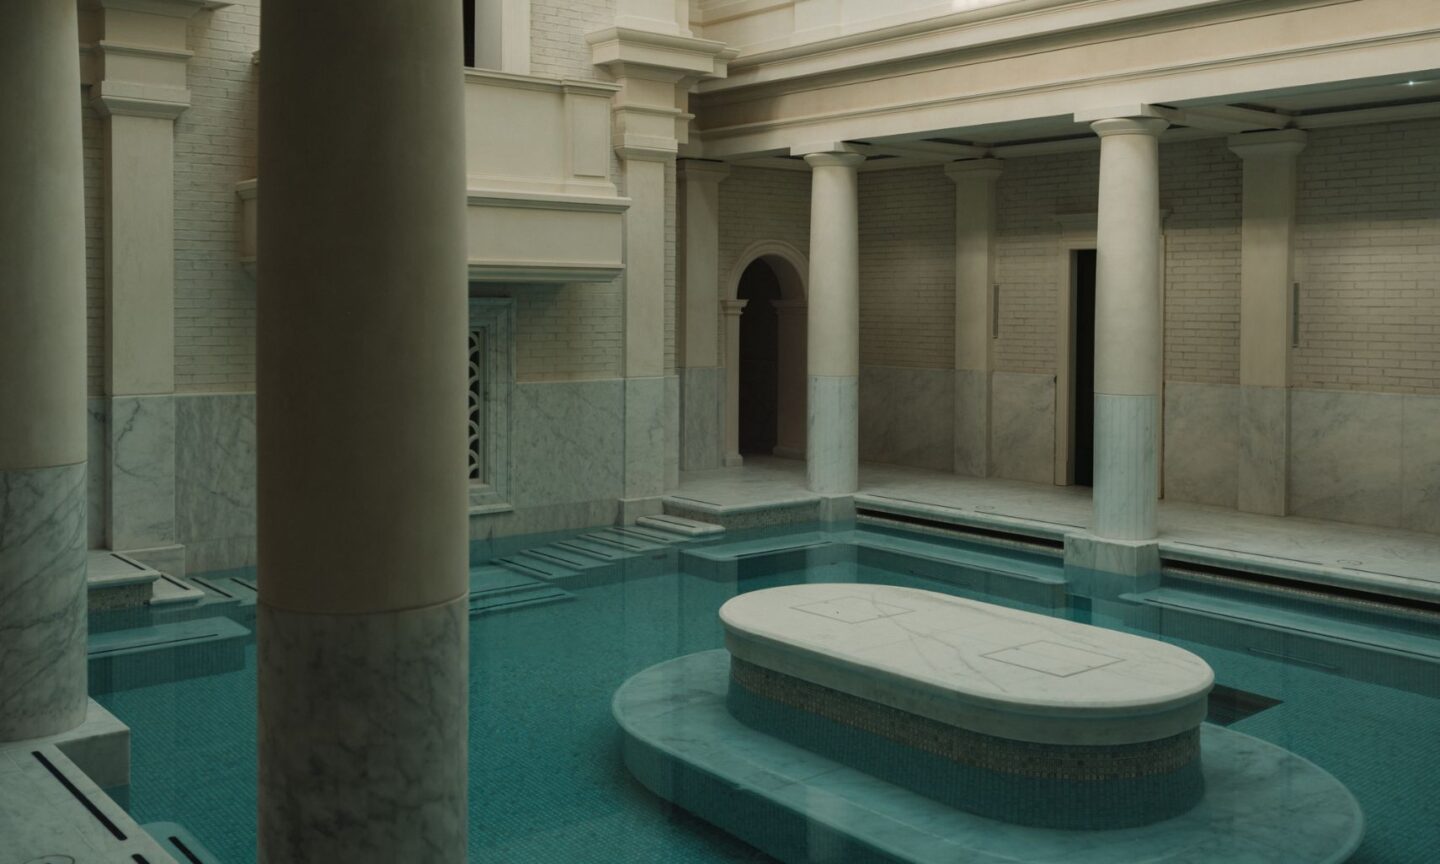 Bathing Hall at Eynsham Baths